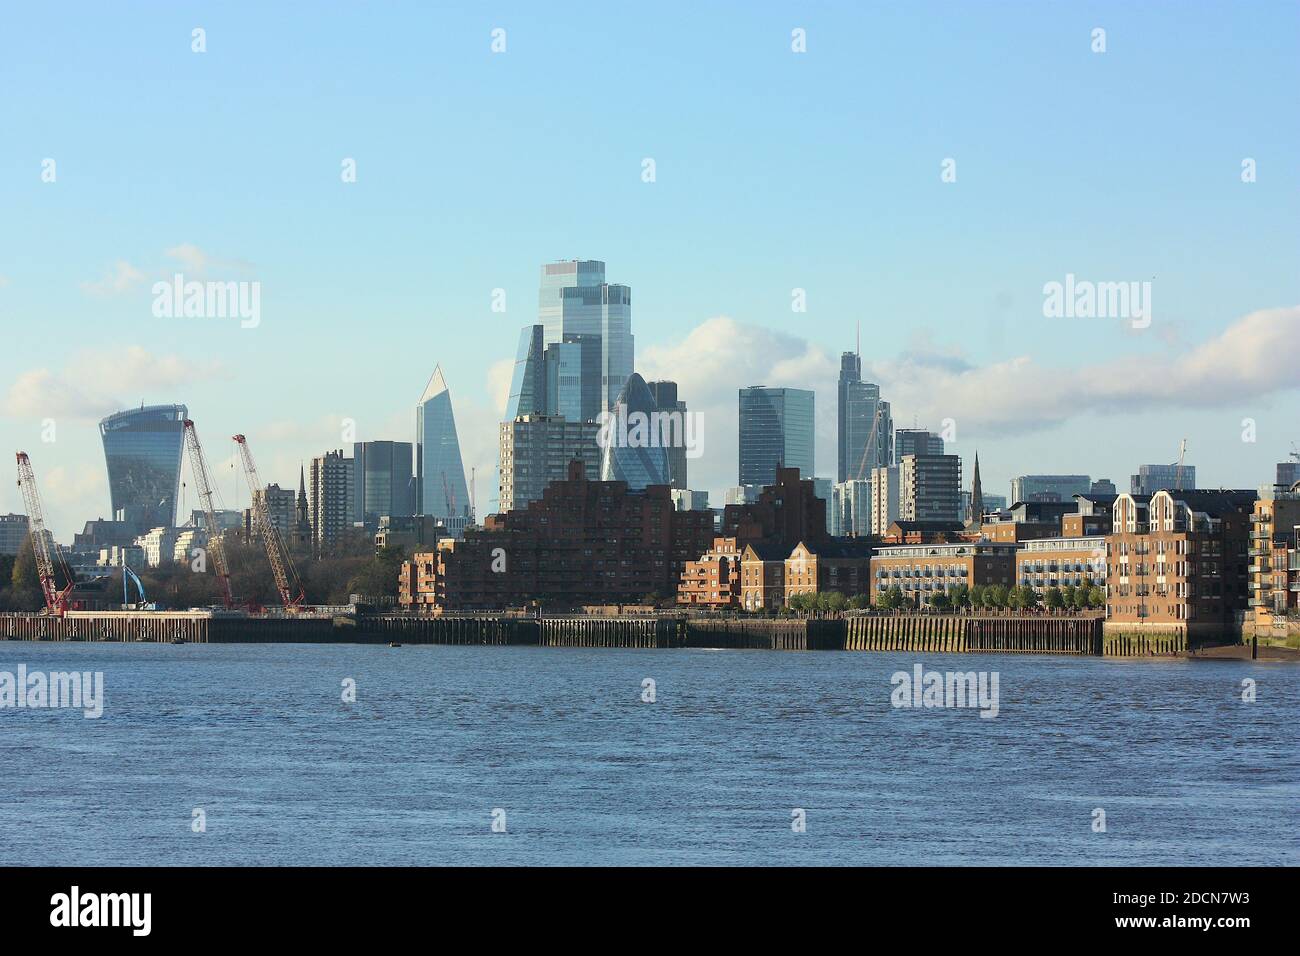 La ville de Londres vue de Canary Wharf, Londres Banque D'Images